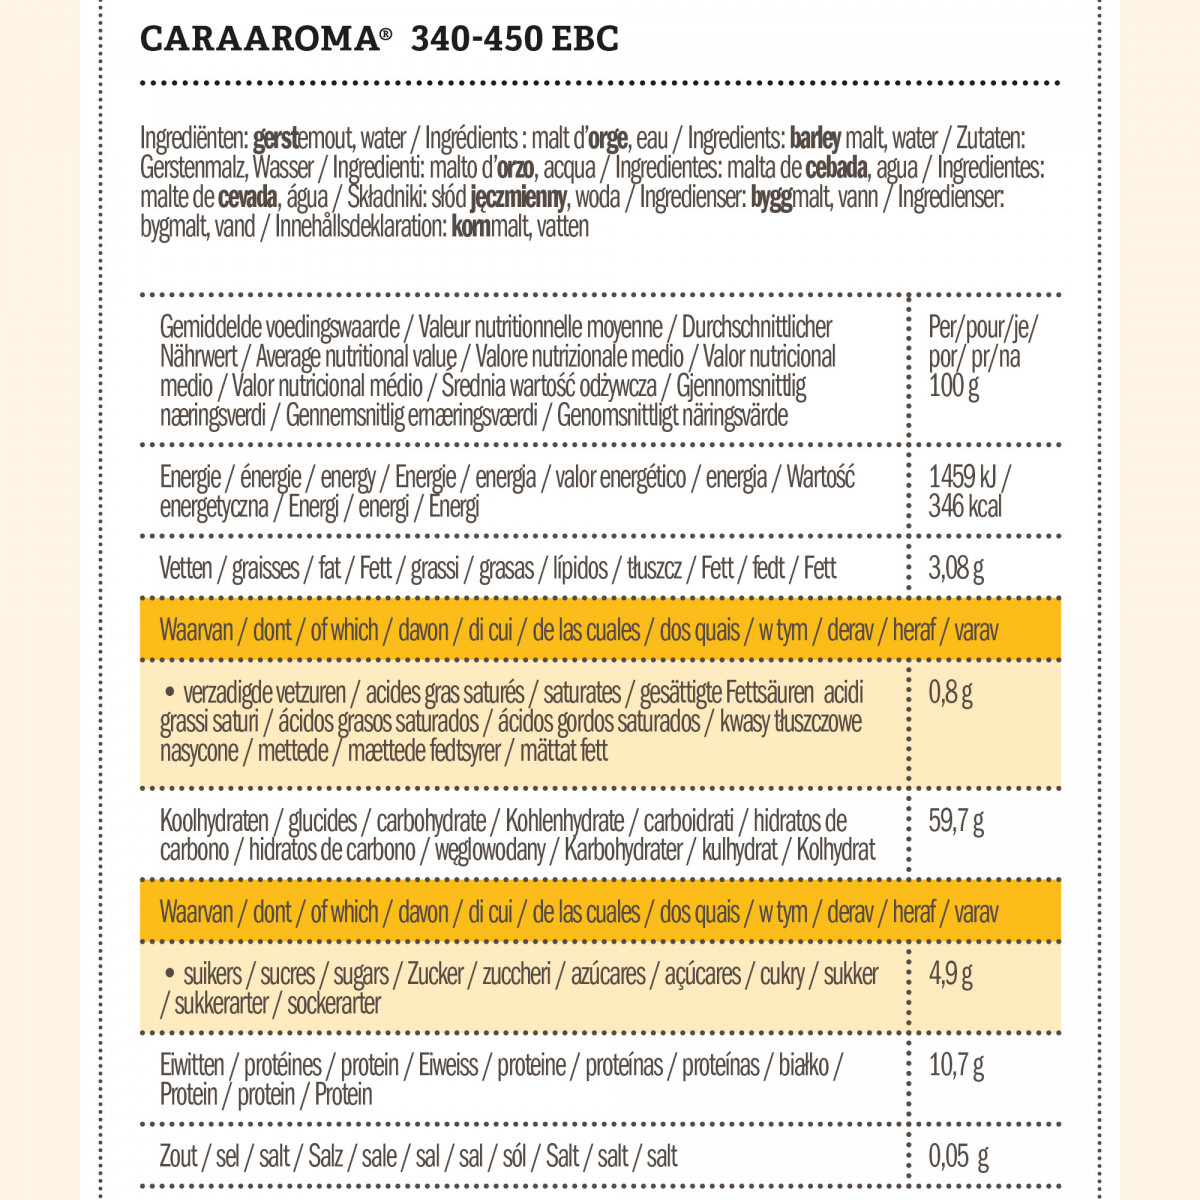 Weyermann® CaraAroma® 340-450 EBC 1 kg